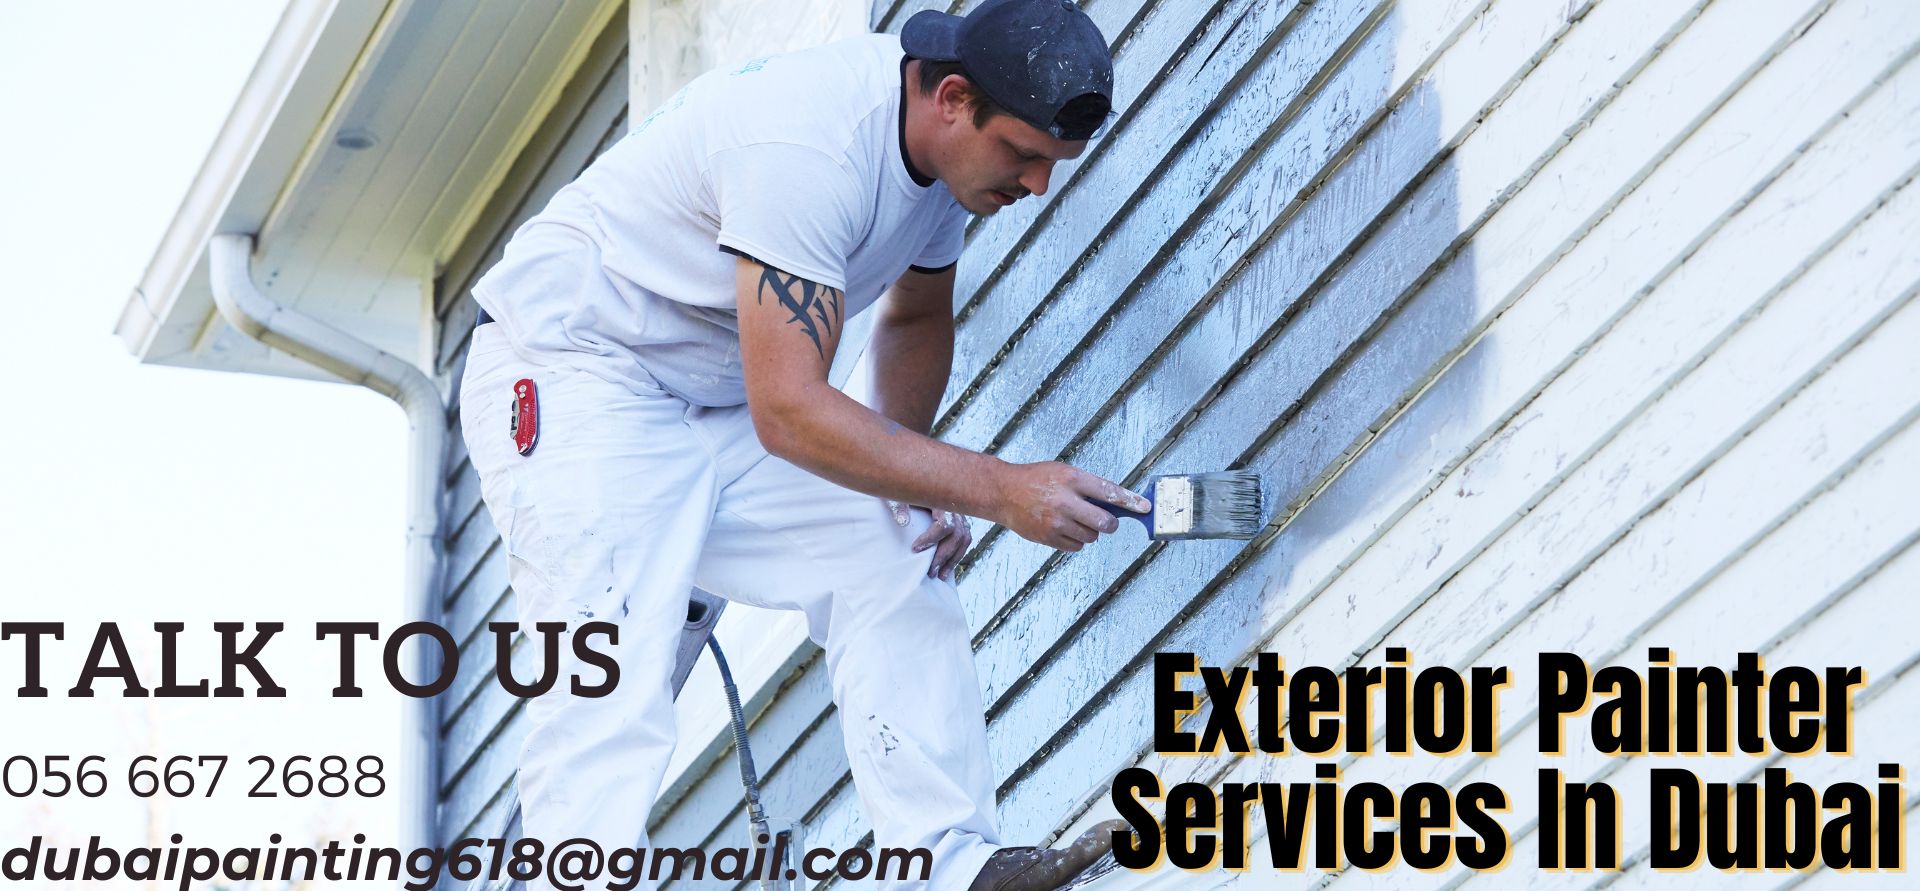 Exterior Painter Services In Dubai